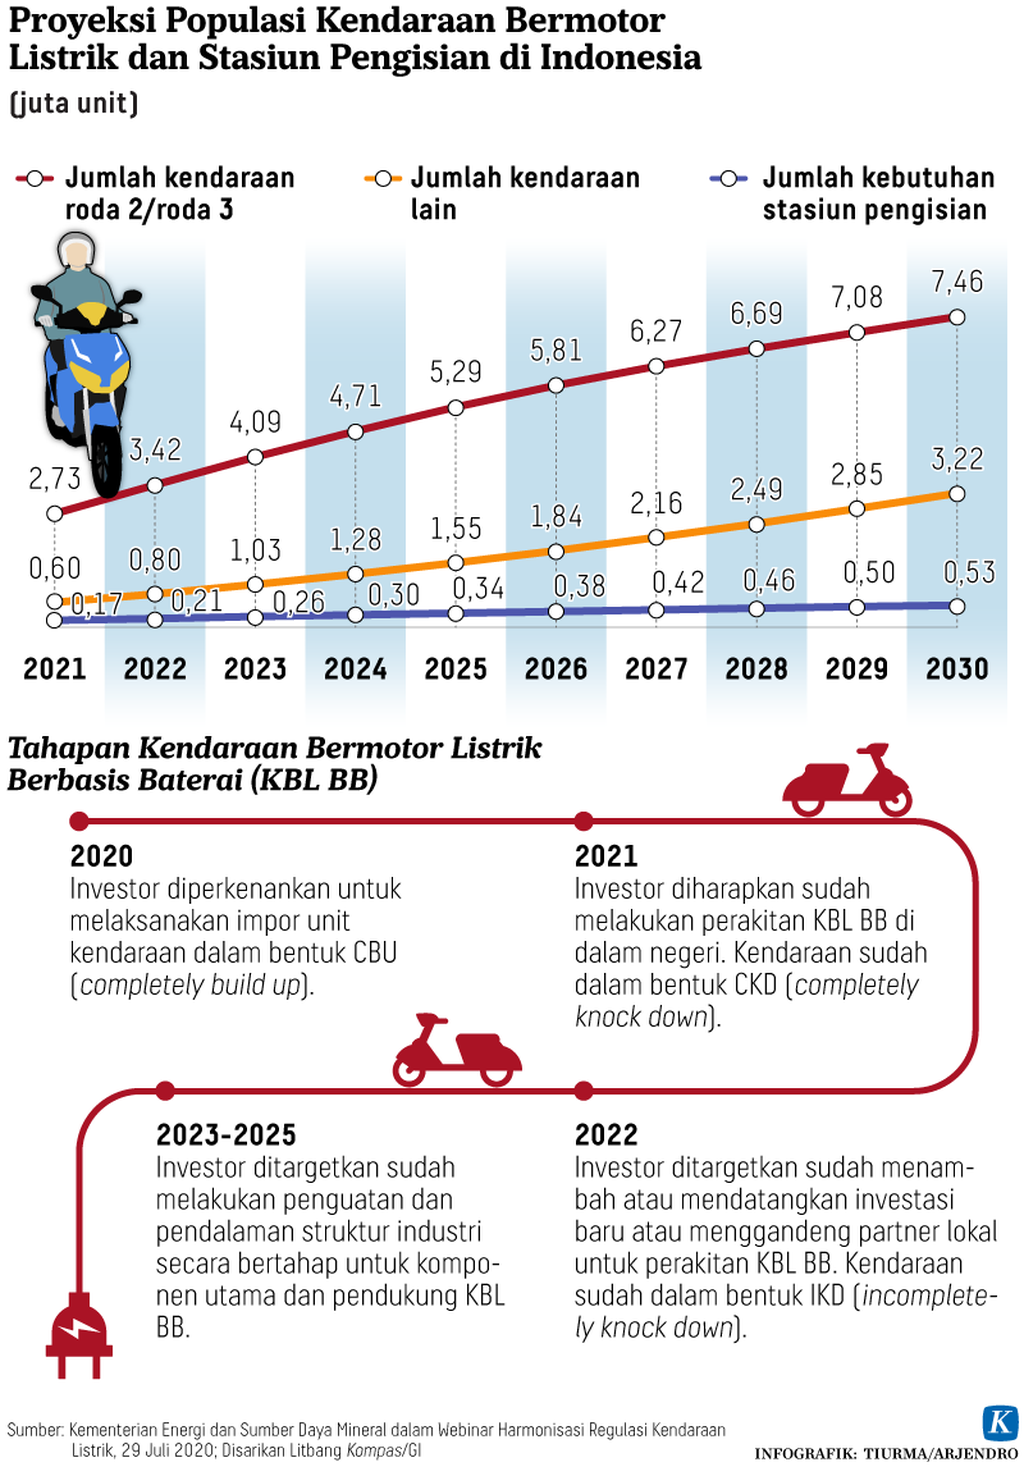 Infografik Populasi Kendaraan Bermotor Listrik dan Stasiun Pengisian